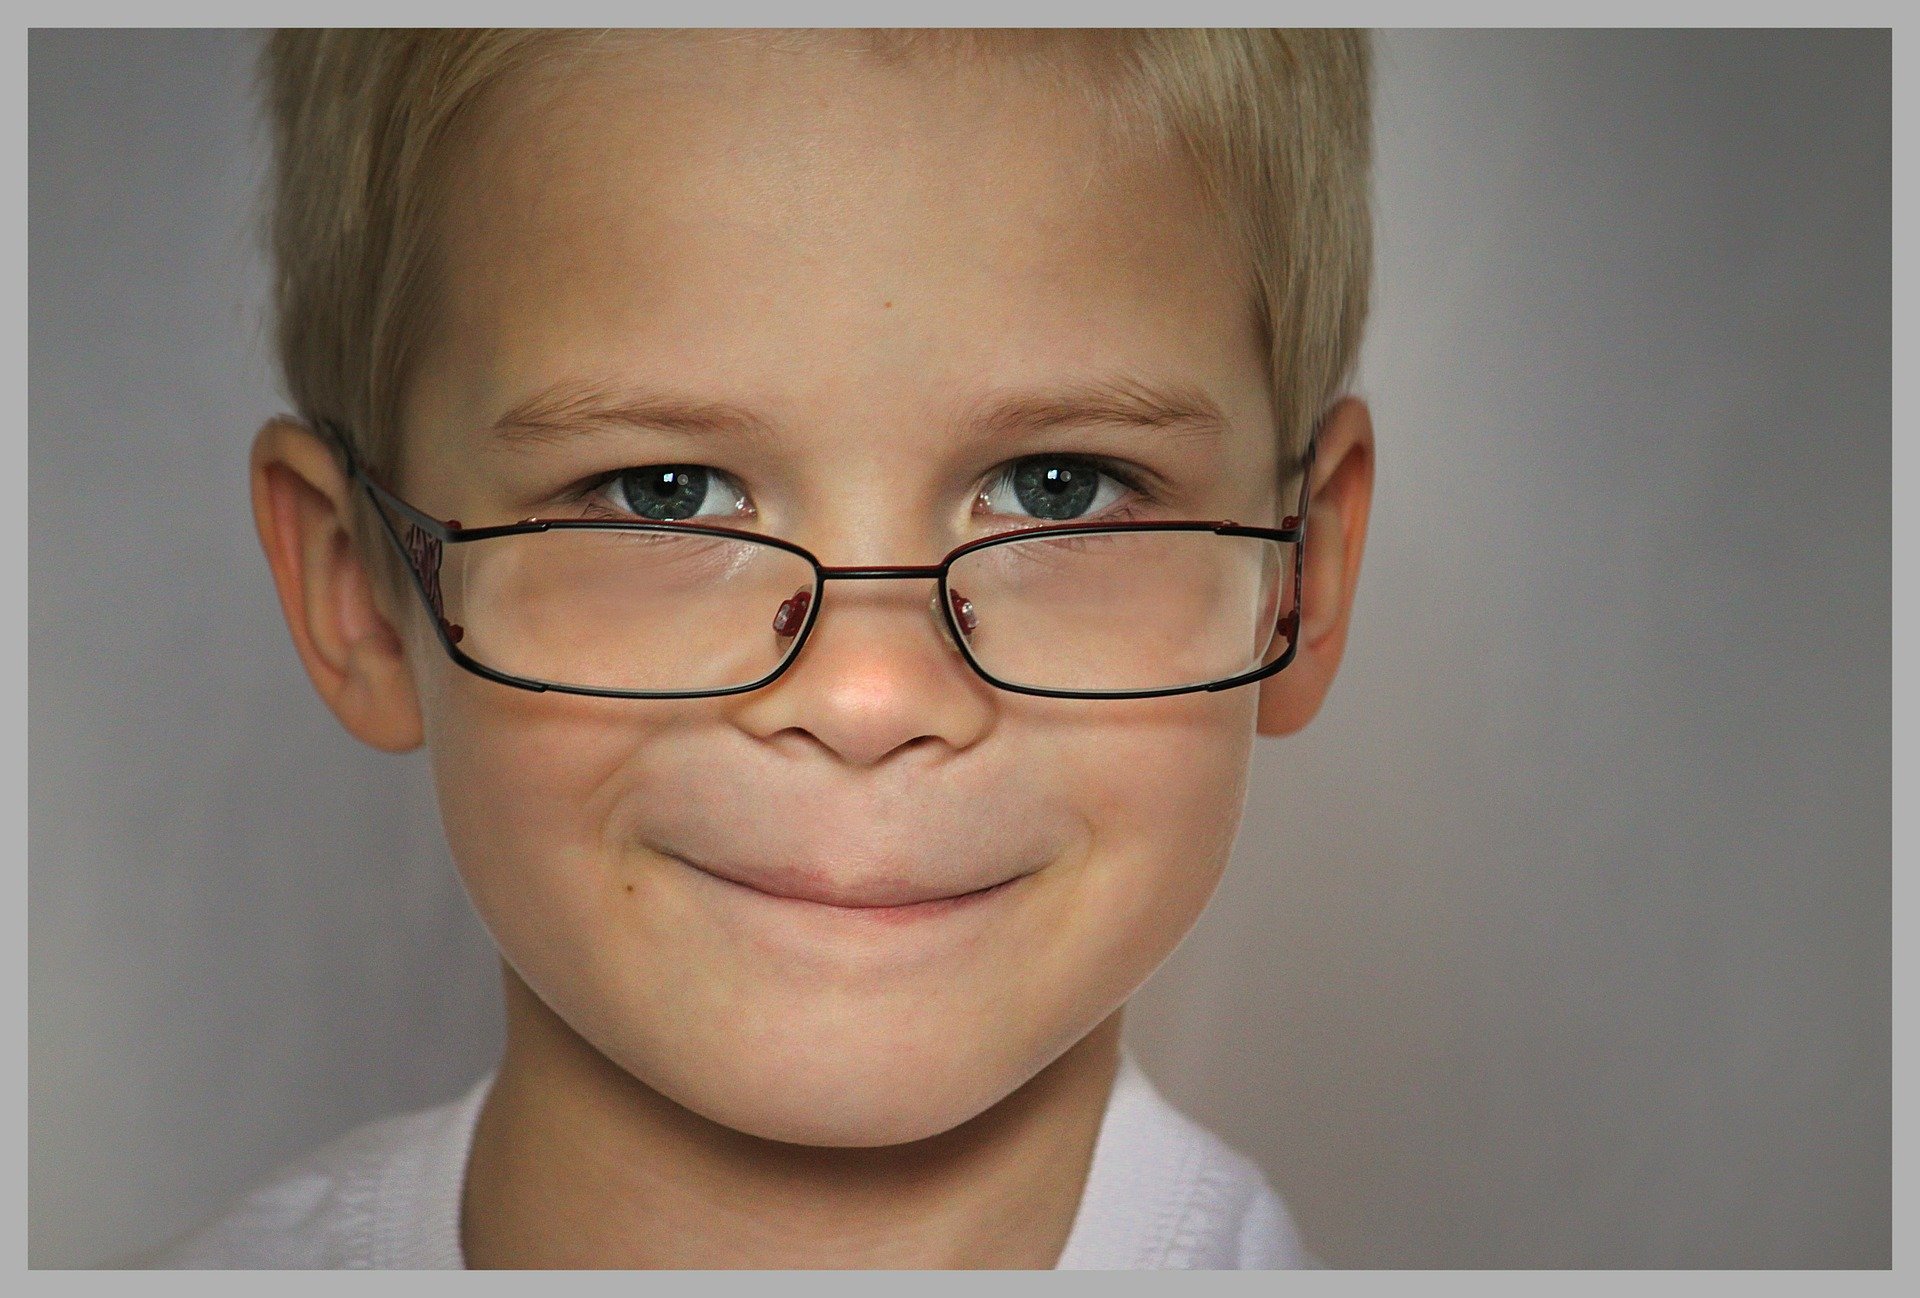 Un enfant portant des lunettes. | Photo : Pixabay